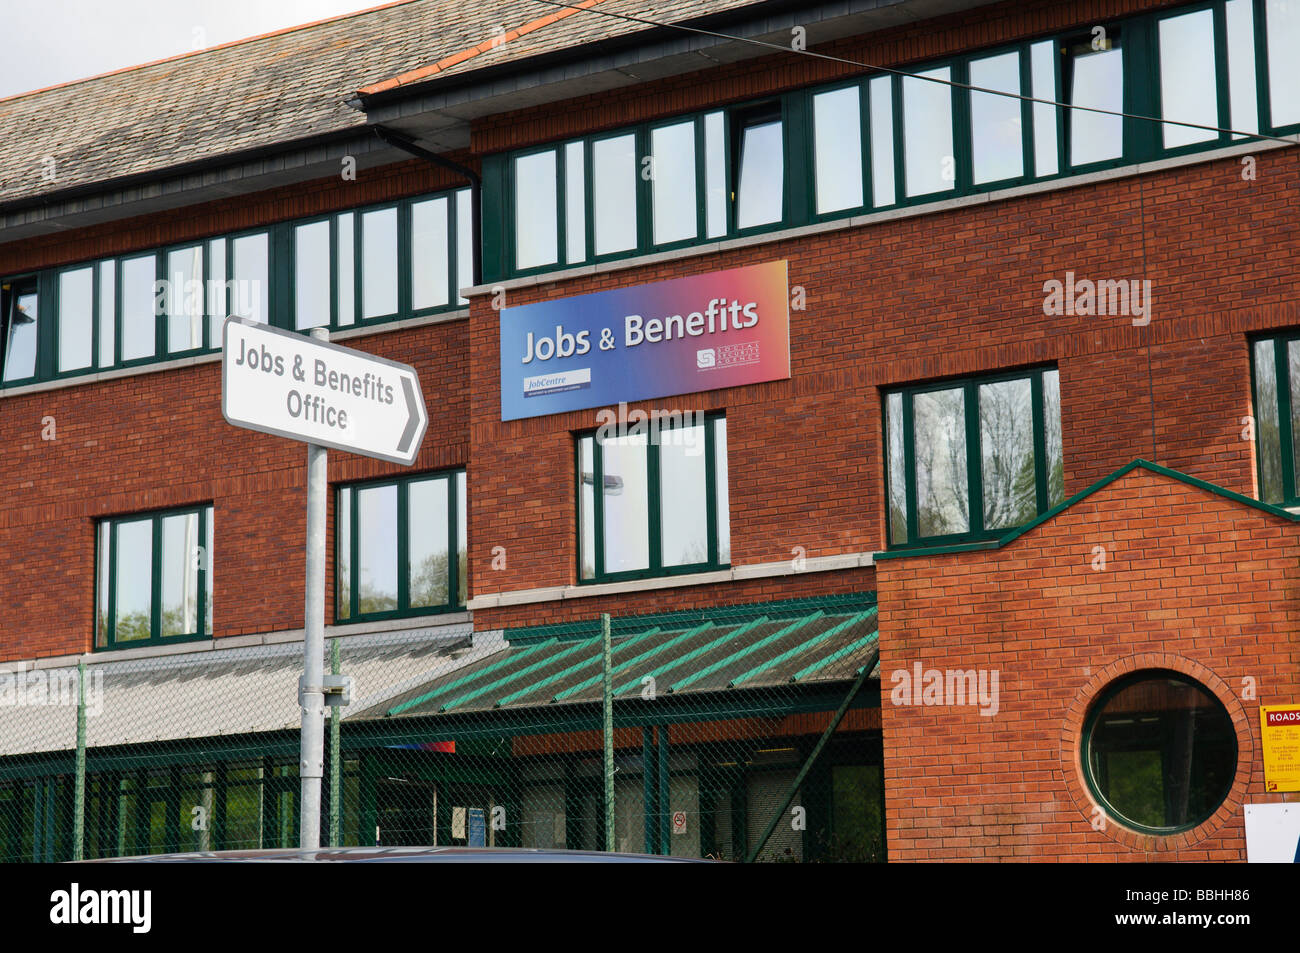 Panneau indiquant la route de l'emploi et des avantages sociaux, dans la région de Antrim, en Irlande du Nord, Royaume-Uni Banque D'Images